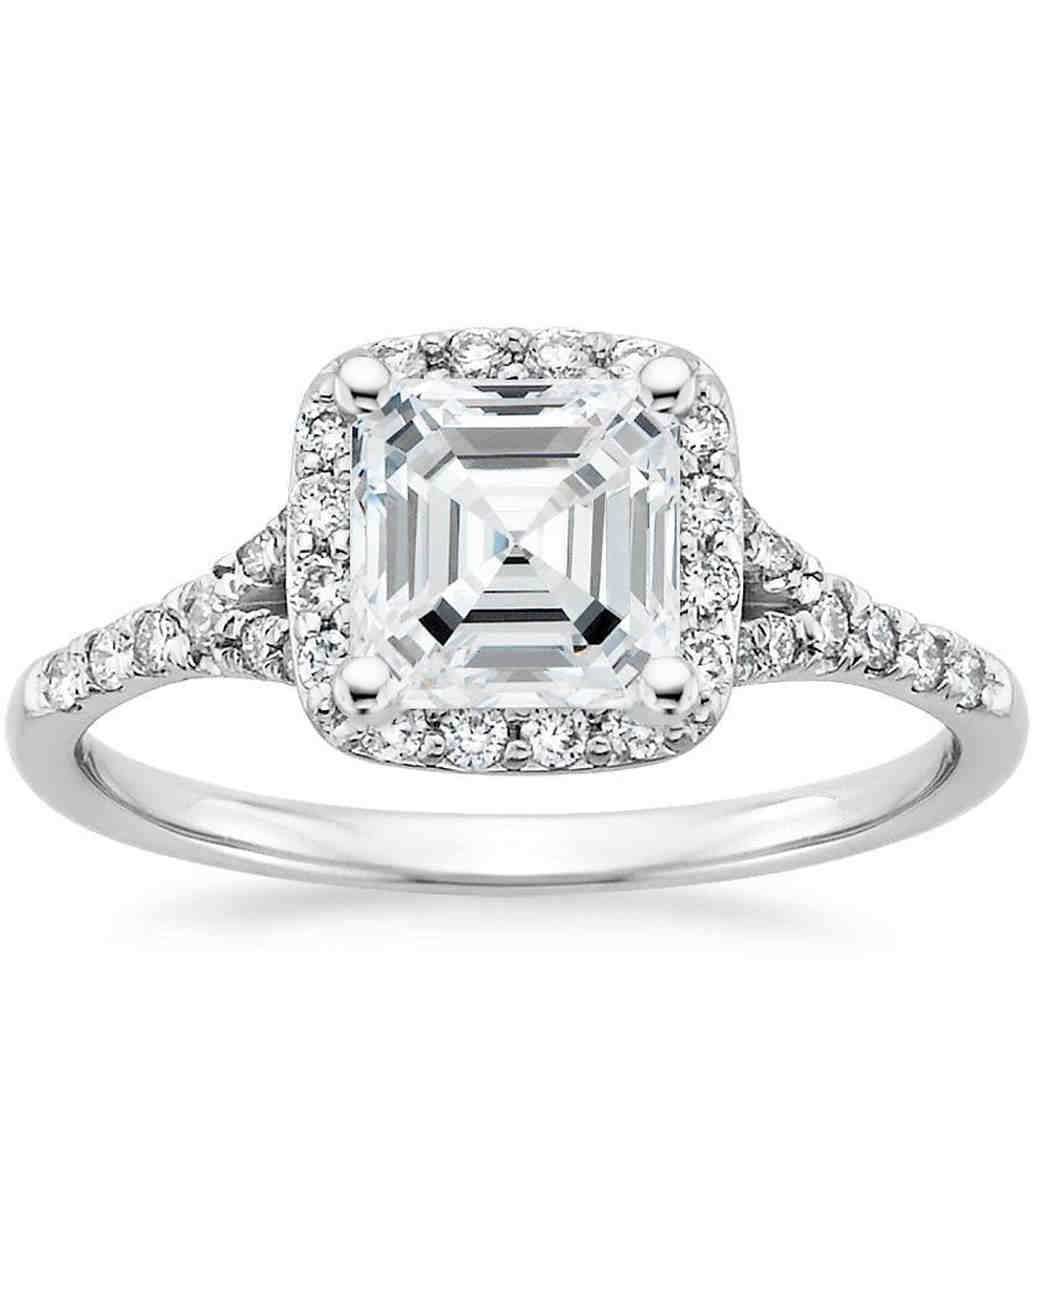 Asscher Cut Diamond Engagement Rings
 Asscher Cut Diamond Engagement Rings